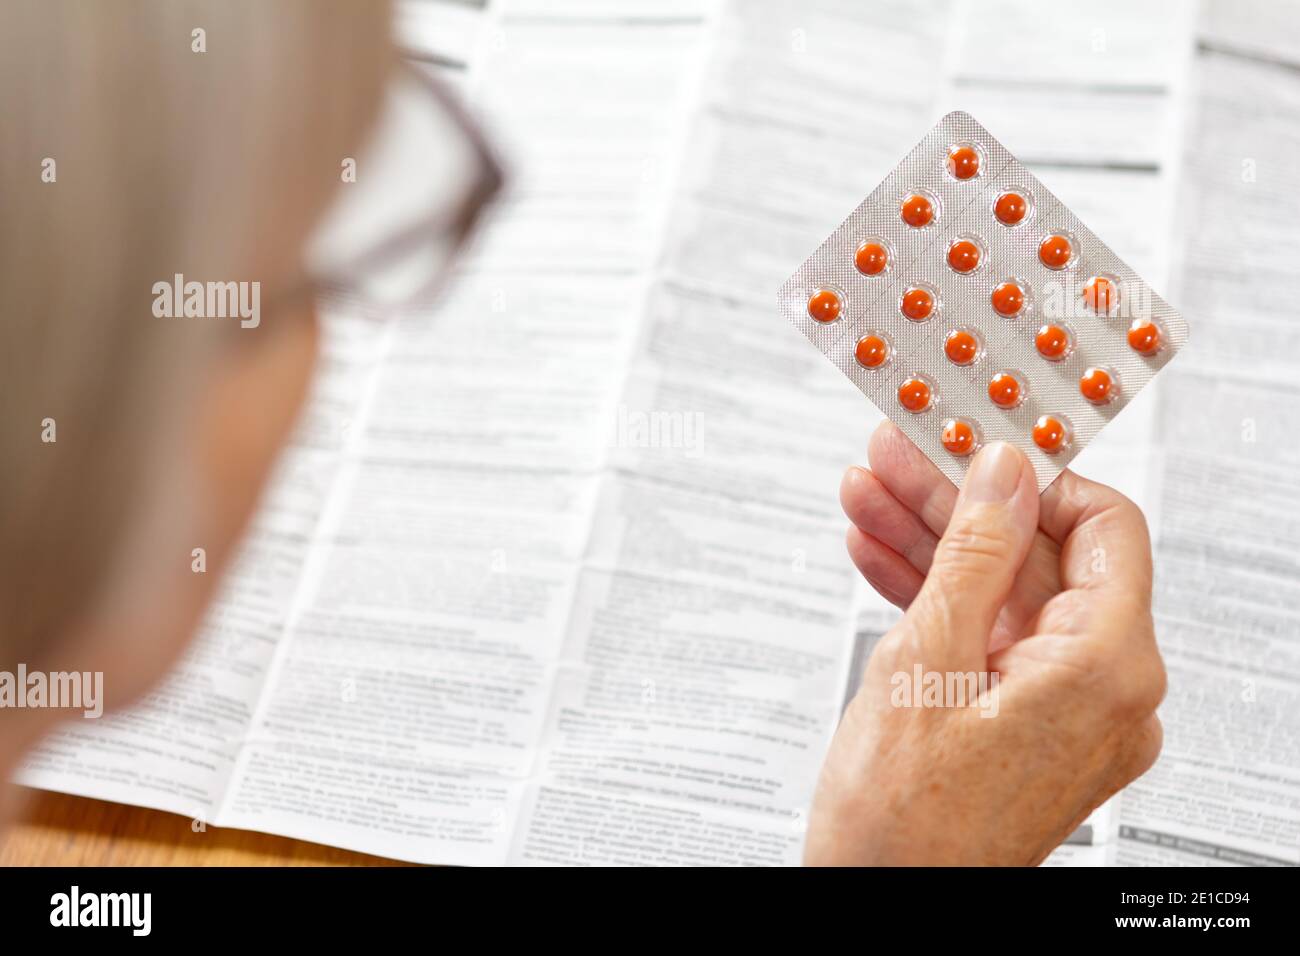 Ältere Frau hält ein Blatt oranger Pillen vor einer riesigen Drogenpackung. Gesundheitswesen und Medizin Konzept. Stockfoto